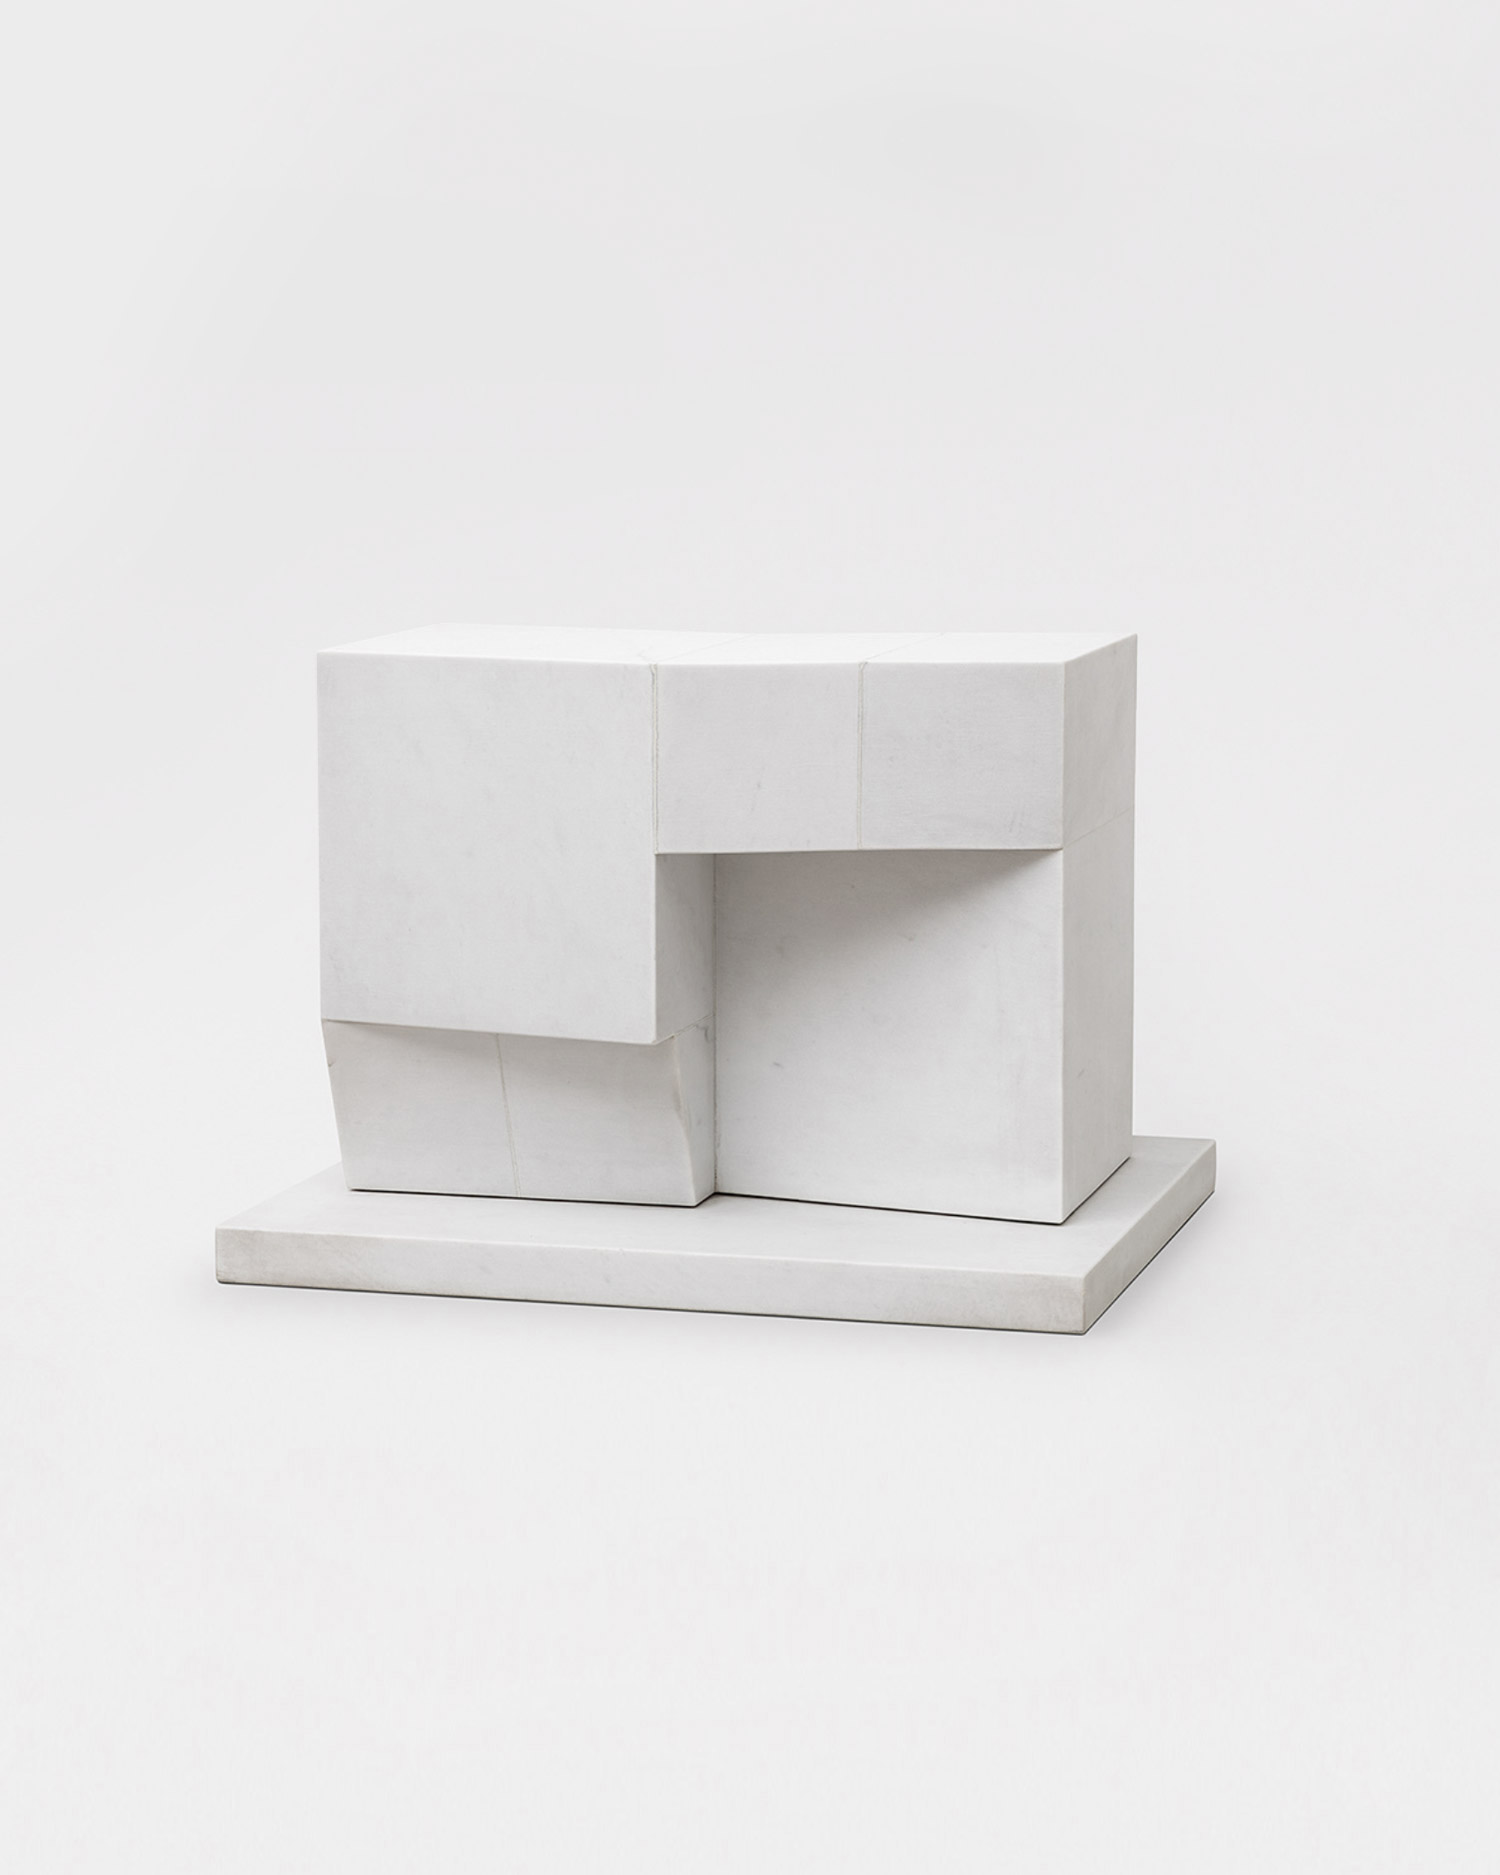 Sergio Camargo, Untitled, 1979, Carrara marble, 33.5 × 47 × 38 cm, Photo via Galeria Raquel Arnaud